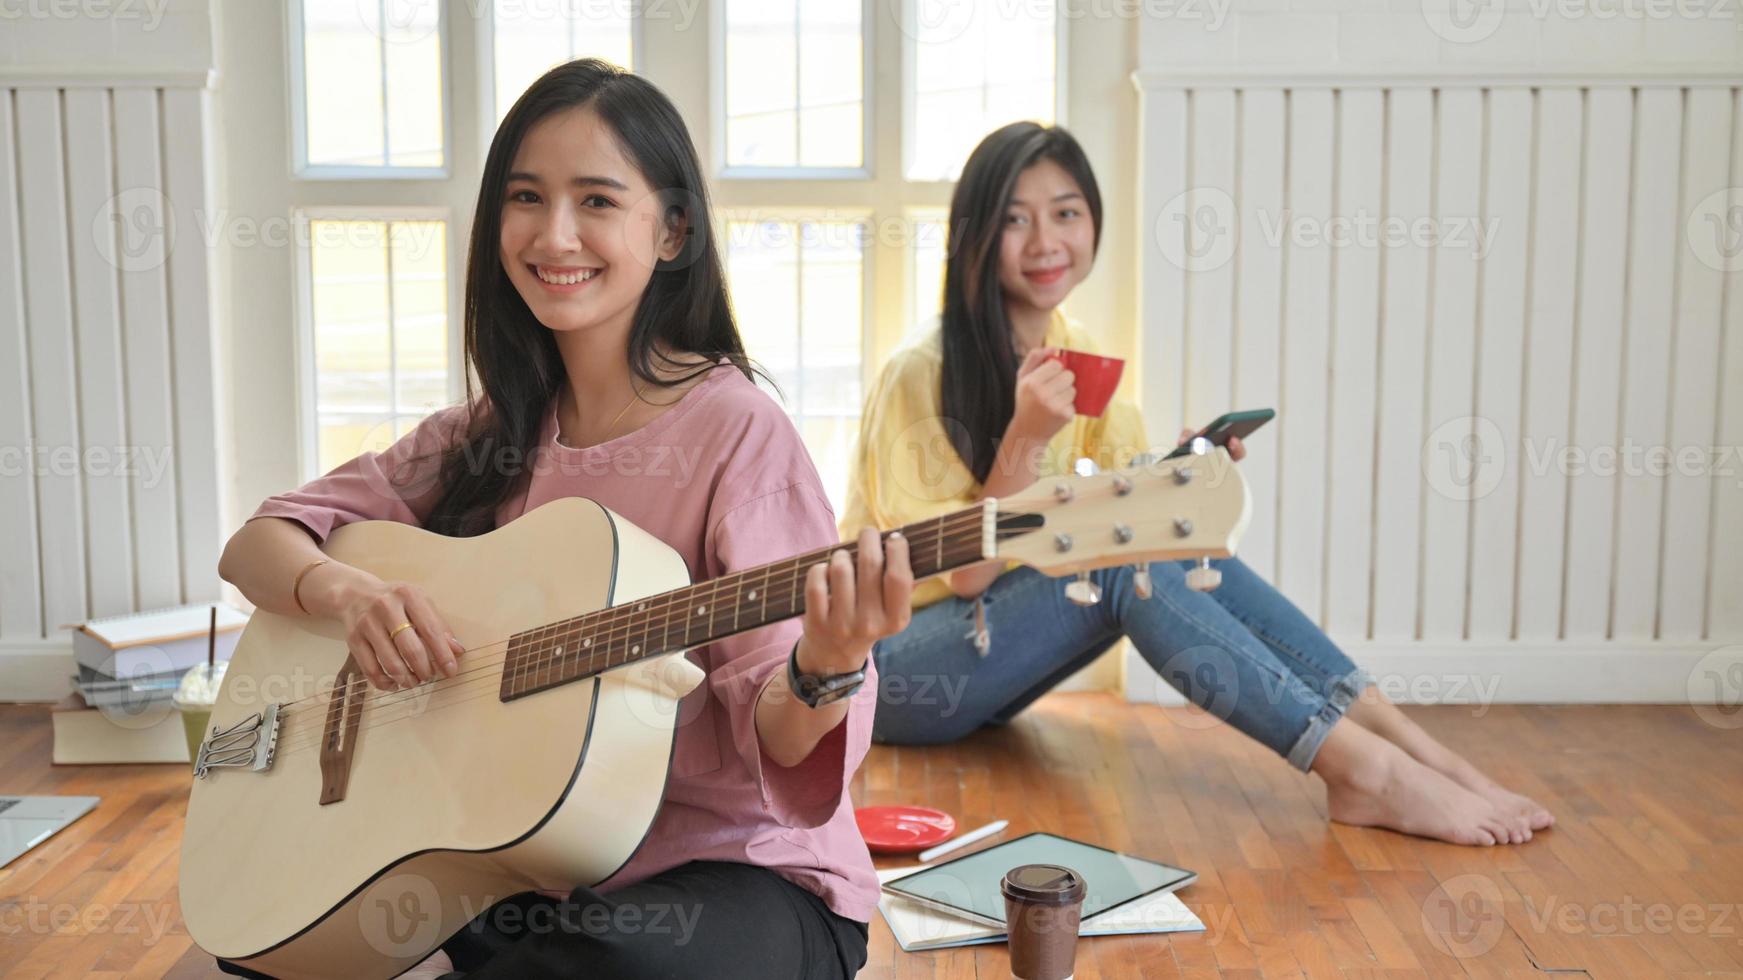 Las adolescentes asiáticas cantan y tocan guitarras. Se quedan en casa para prevenir el brote del virus corona. foto